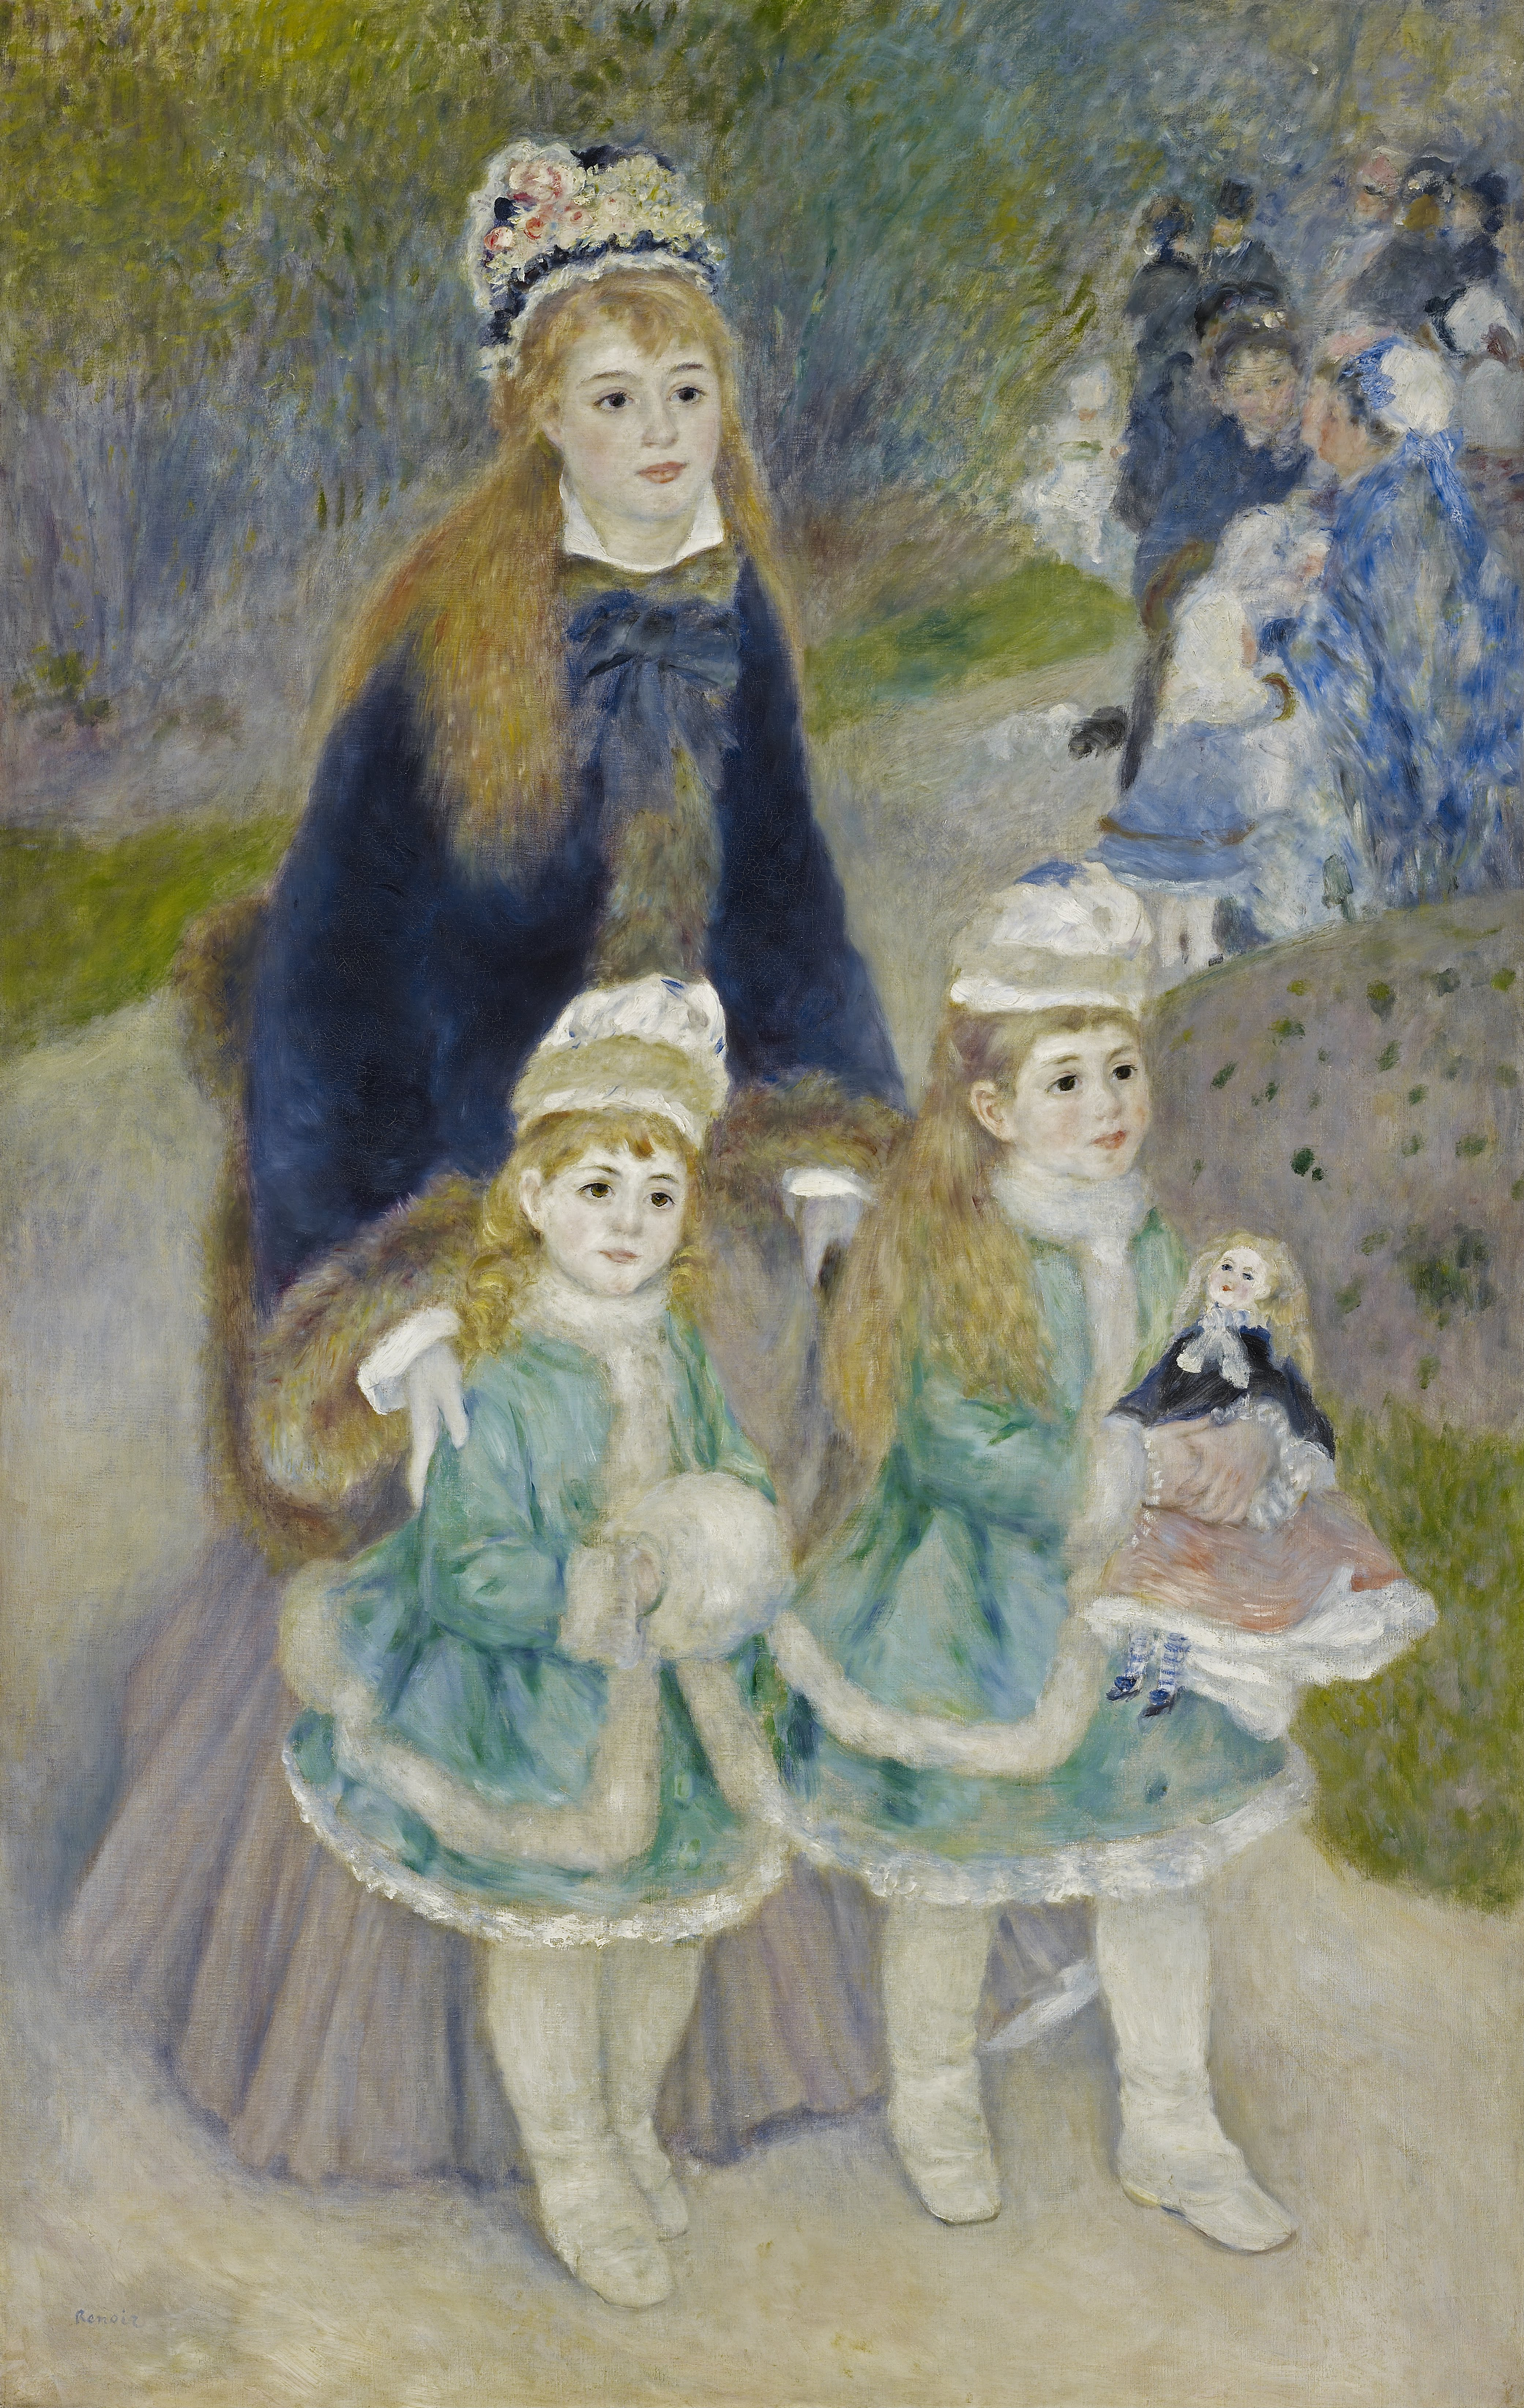 La Promenade by Pierre-Auguste Renoir - 1874-1876 La Colección Frick